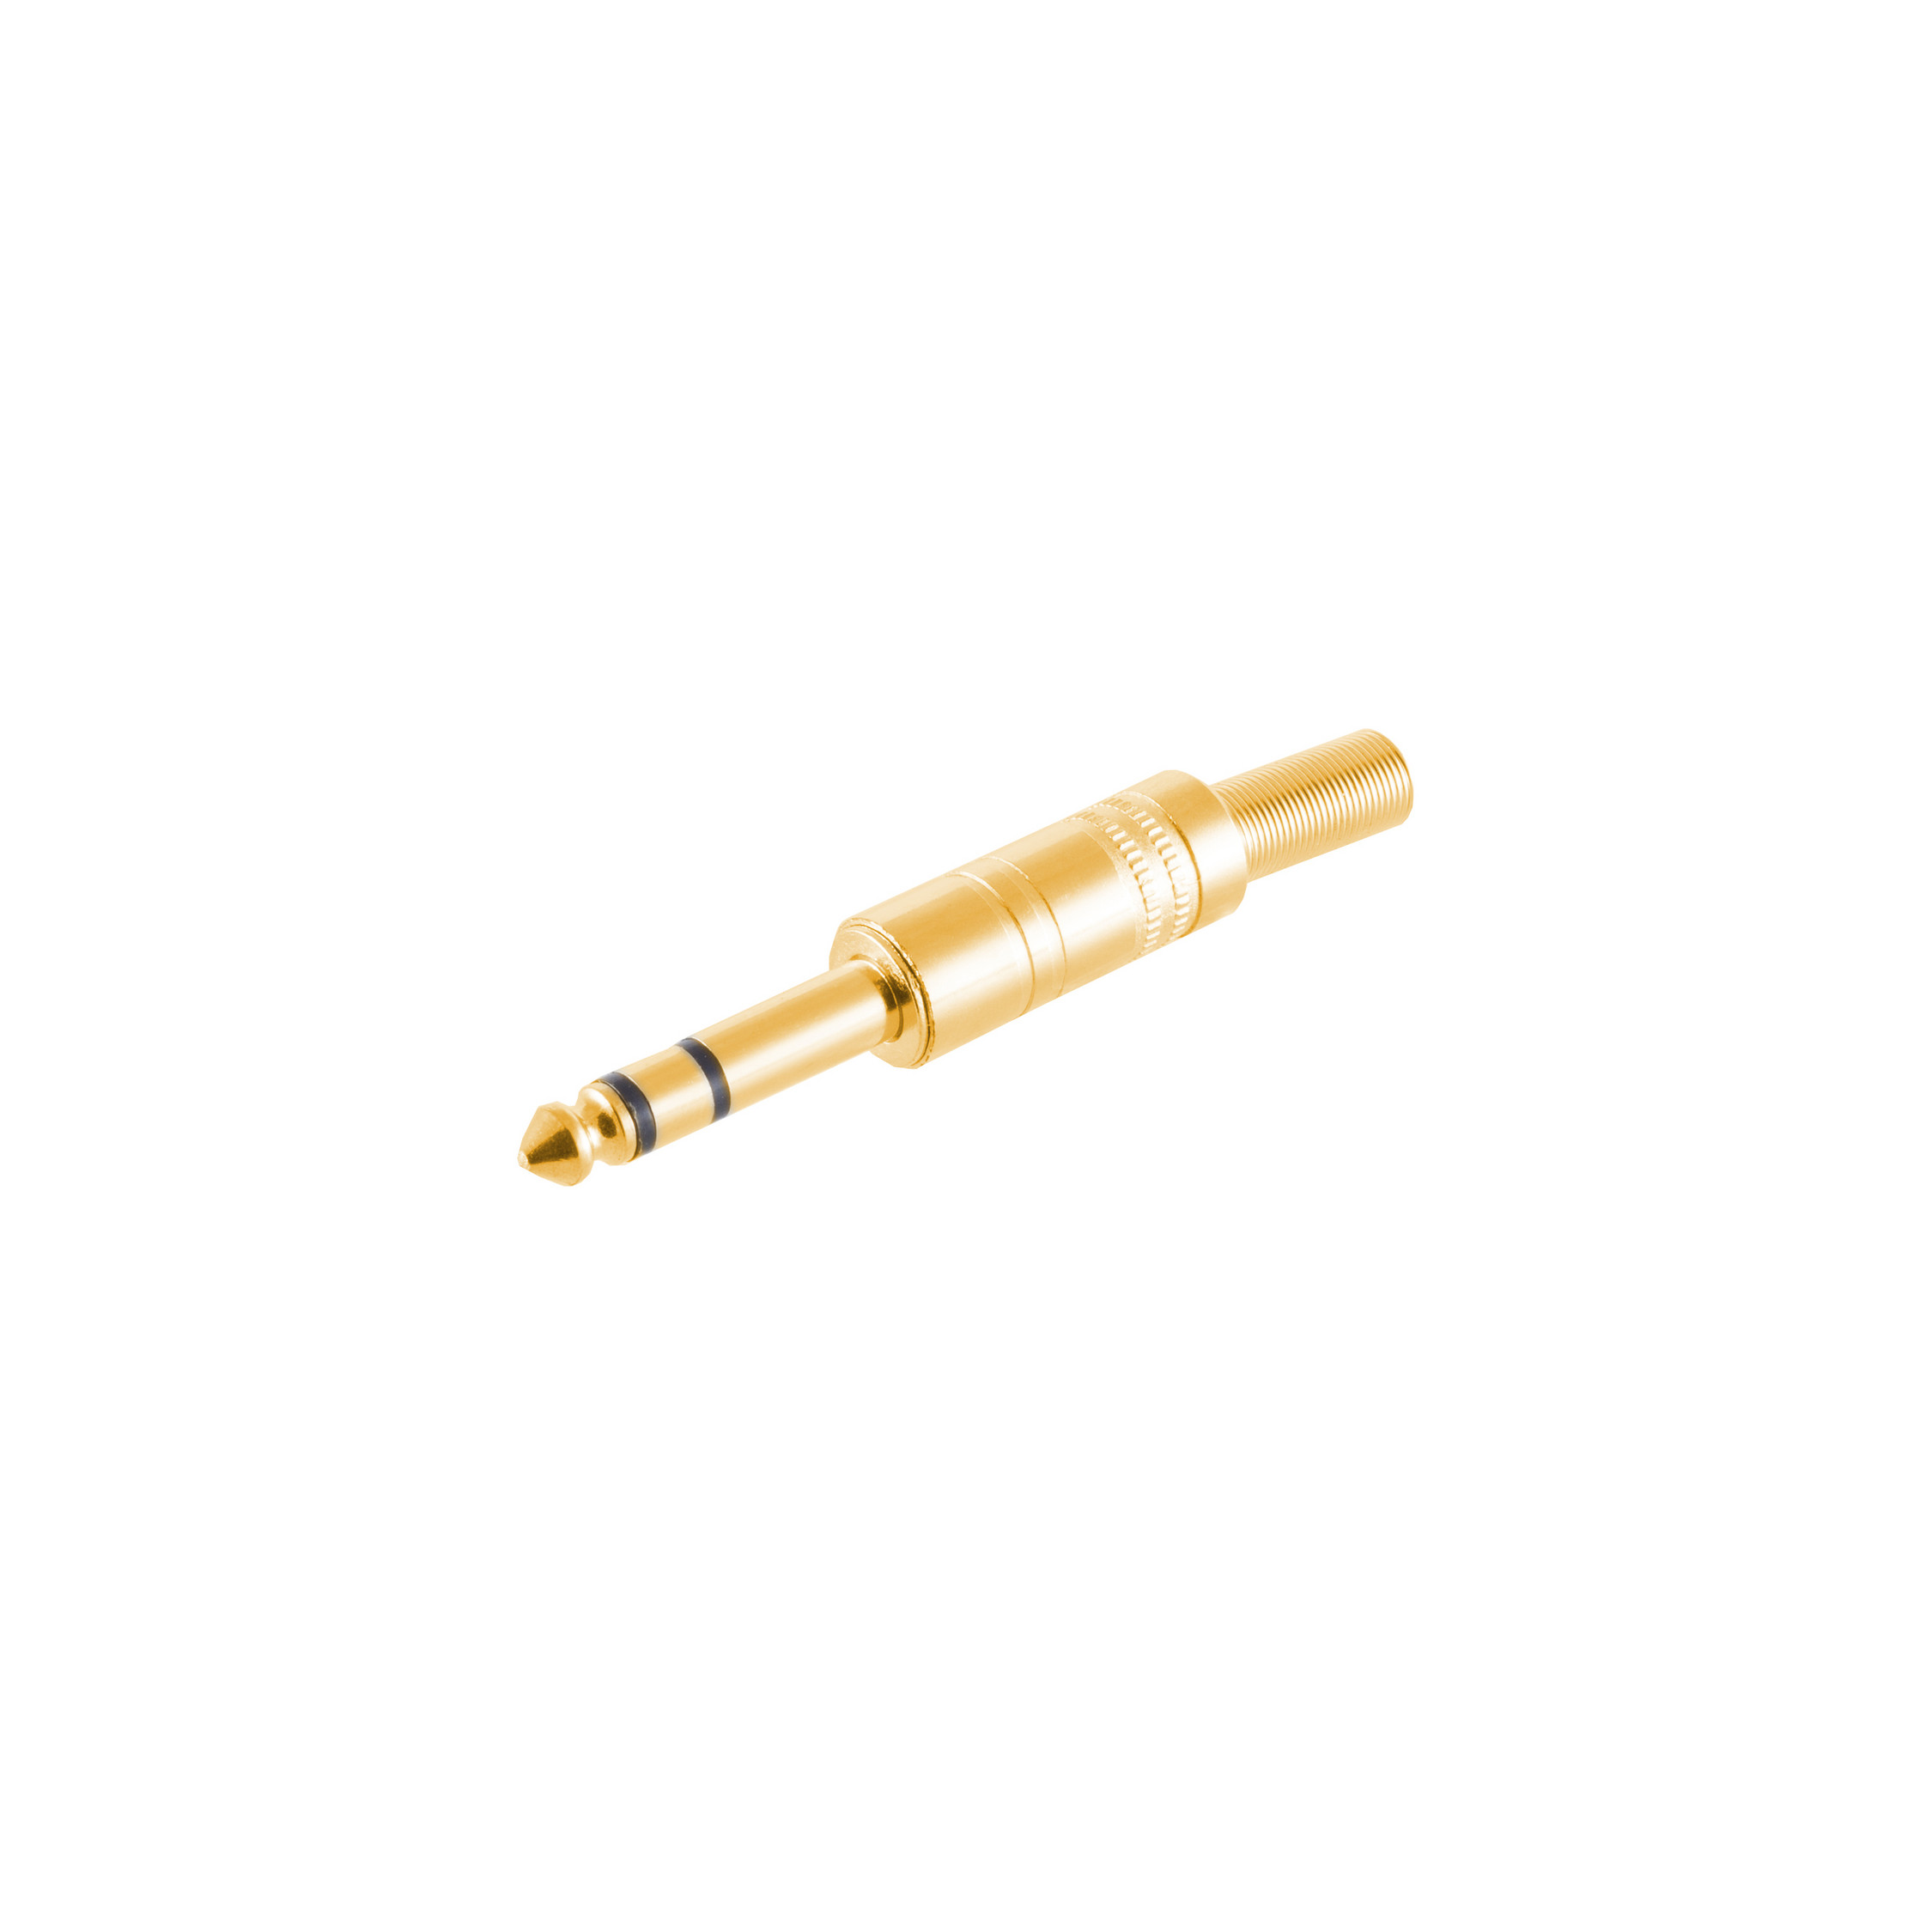 S/CONN MAXIMUM Stereo Klinkenstecker Metall, Klinke CONNECTIVITY 6,3mm, vergoldet